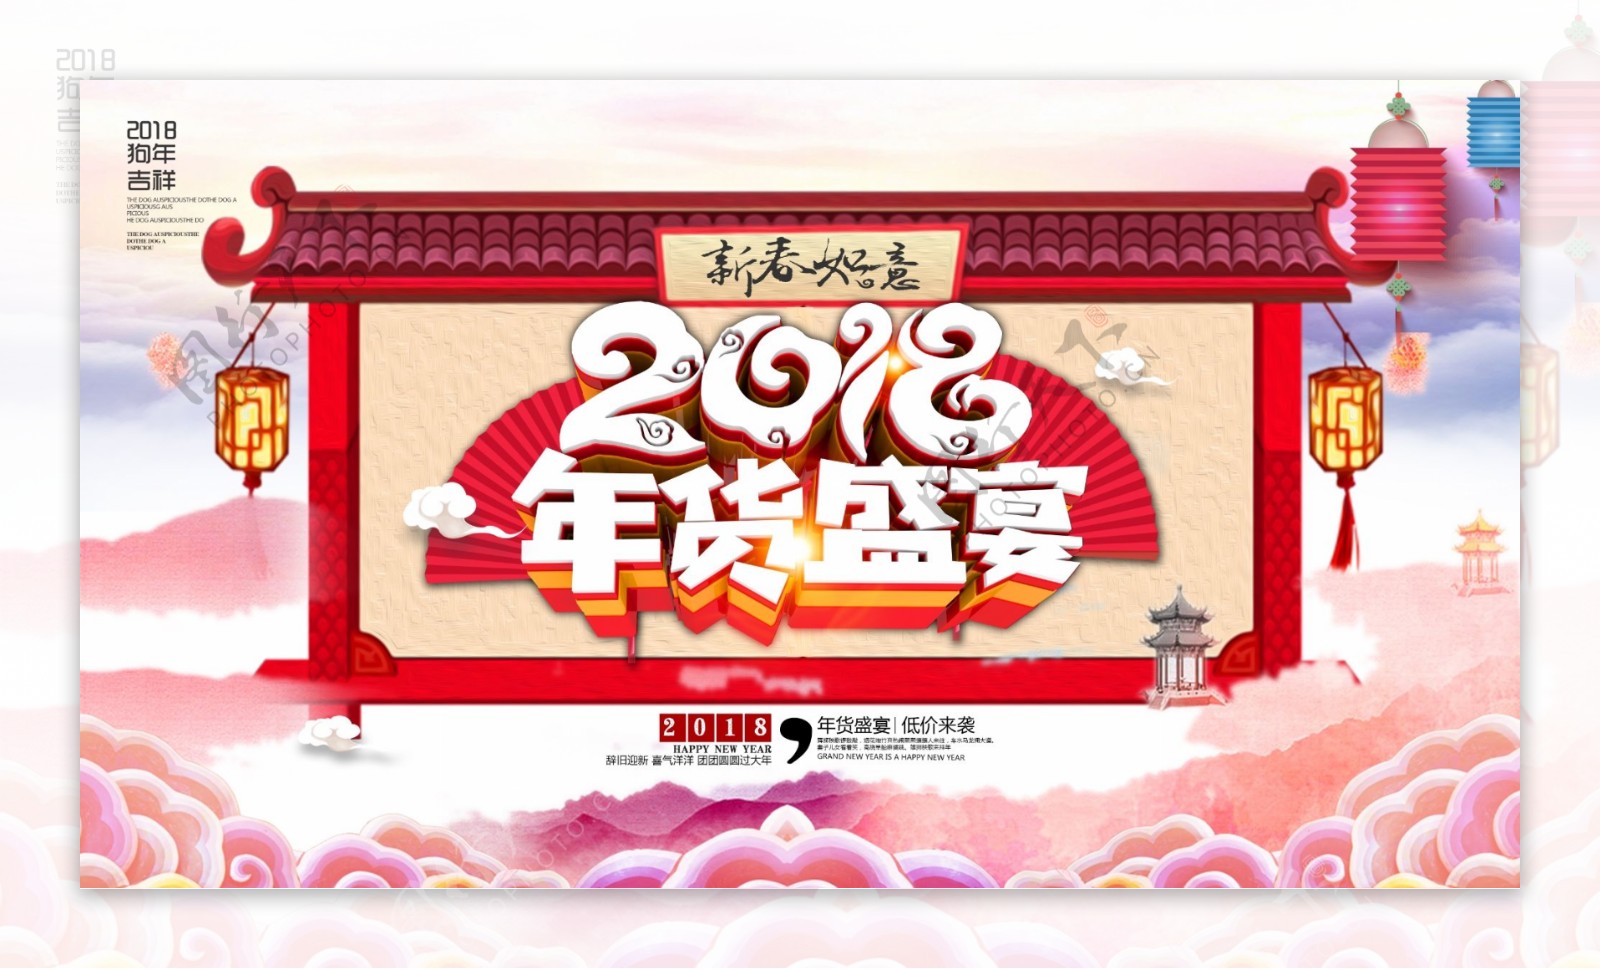 中国风018年货盛宴促销宣传海报